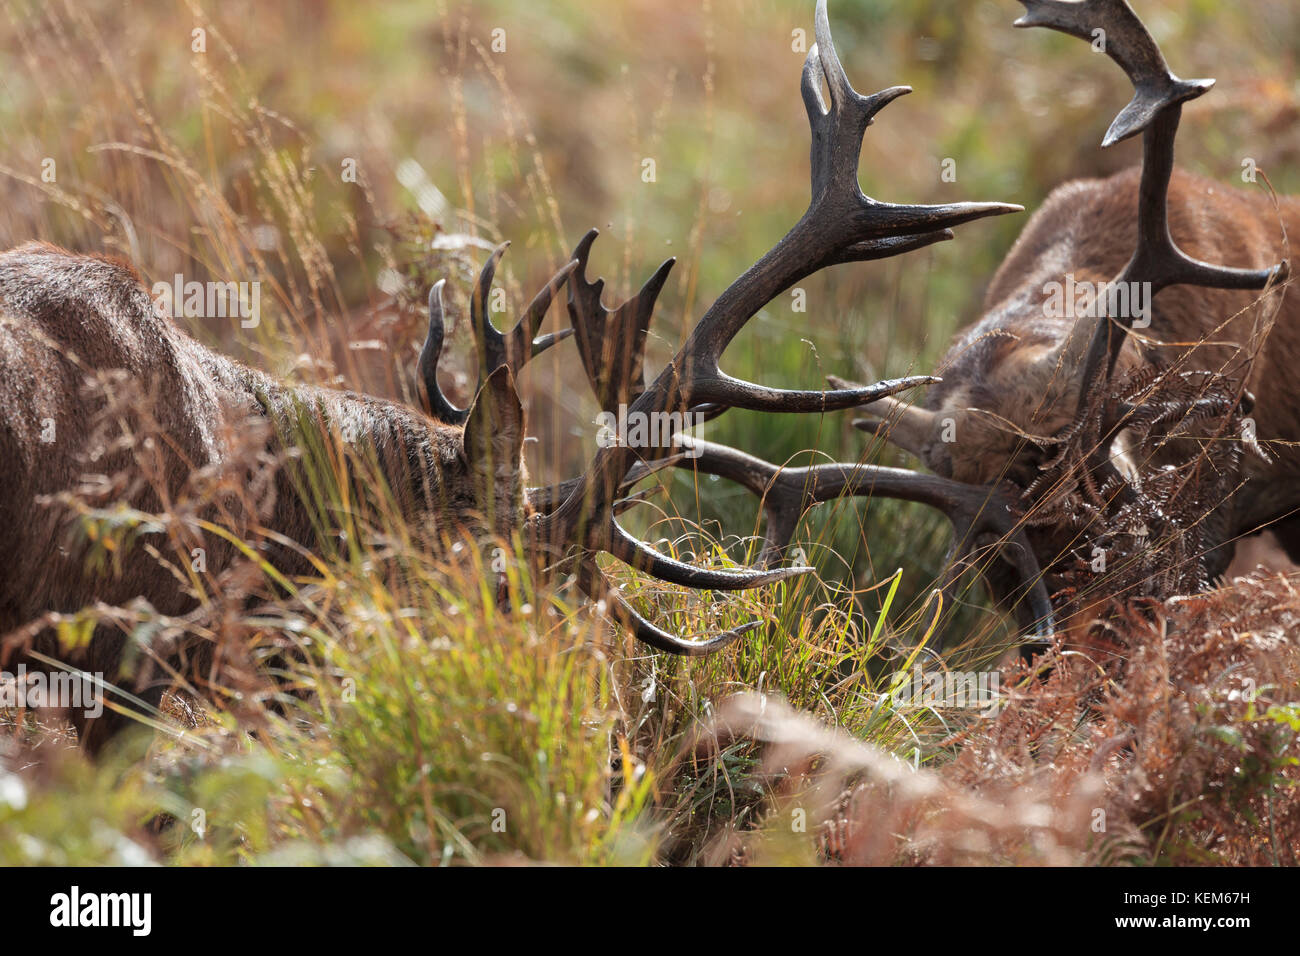 Red Deer stags agression et manières pendant le rut du cerf annuelle Banque D'Images